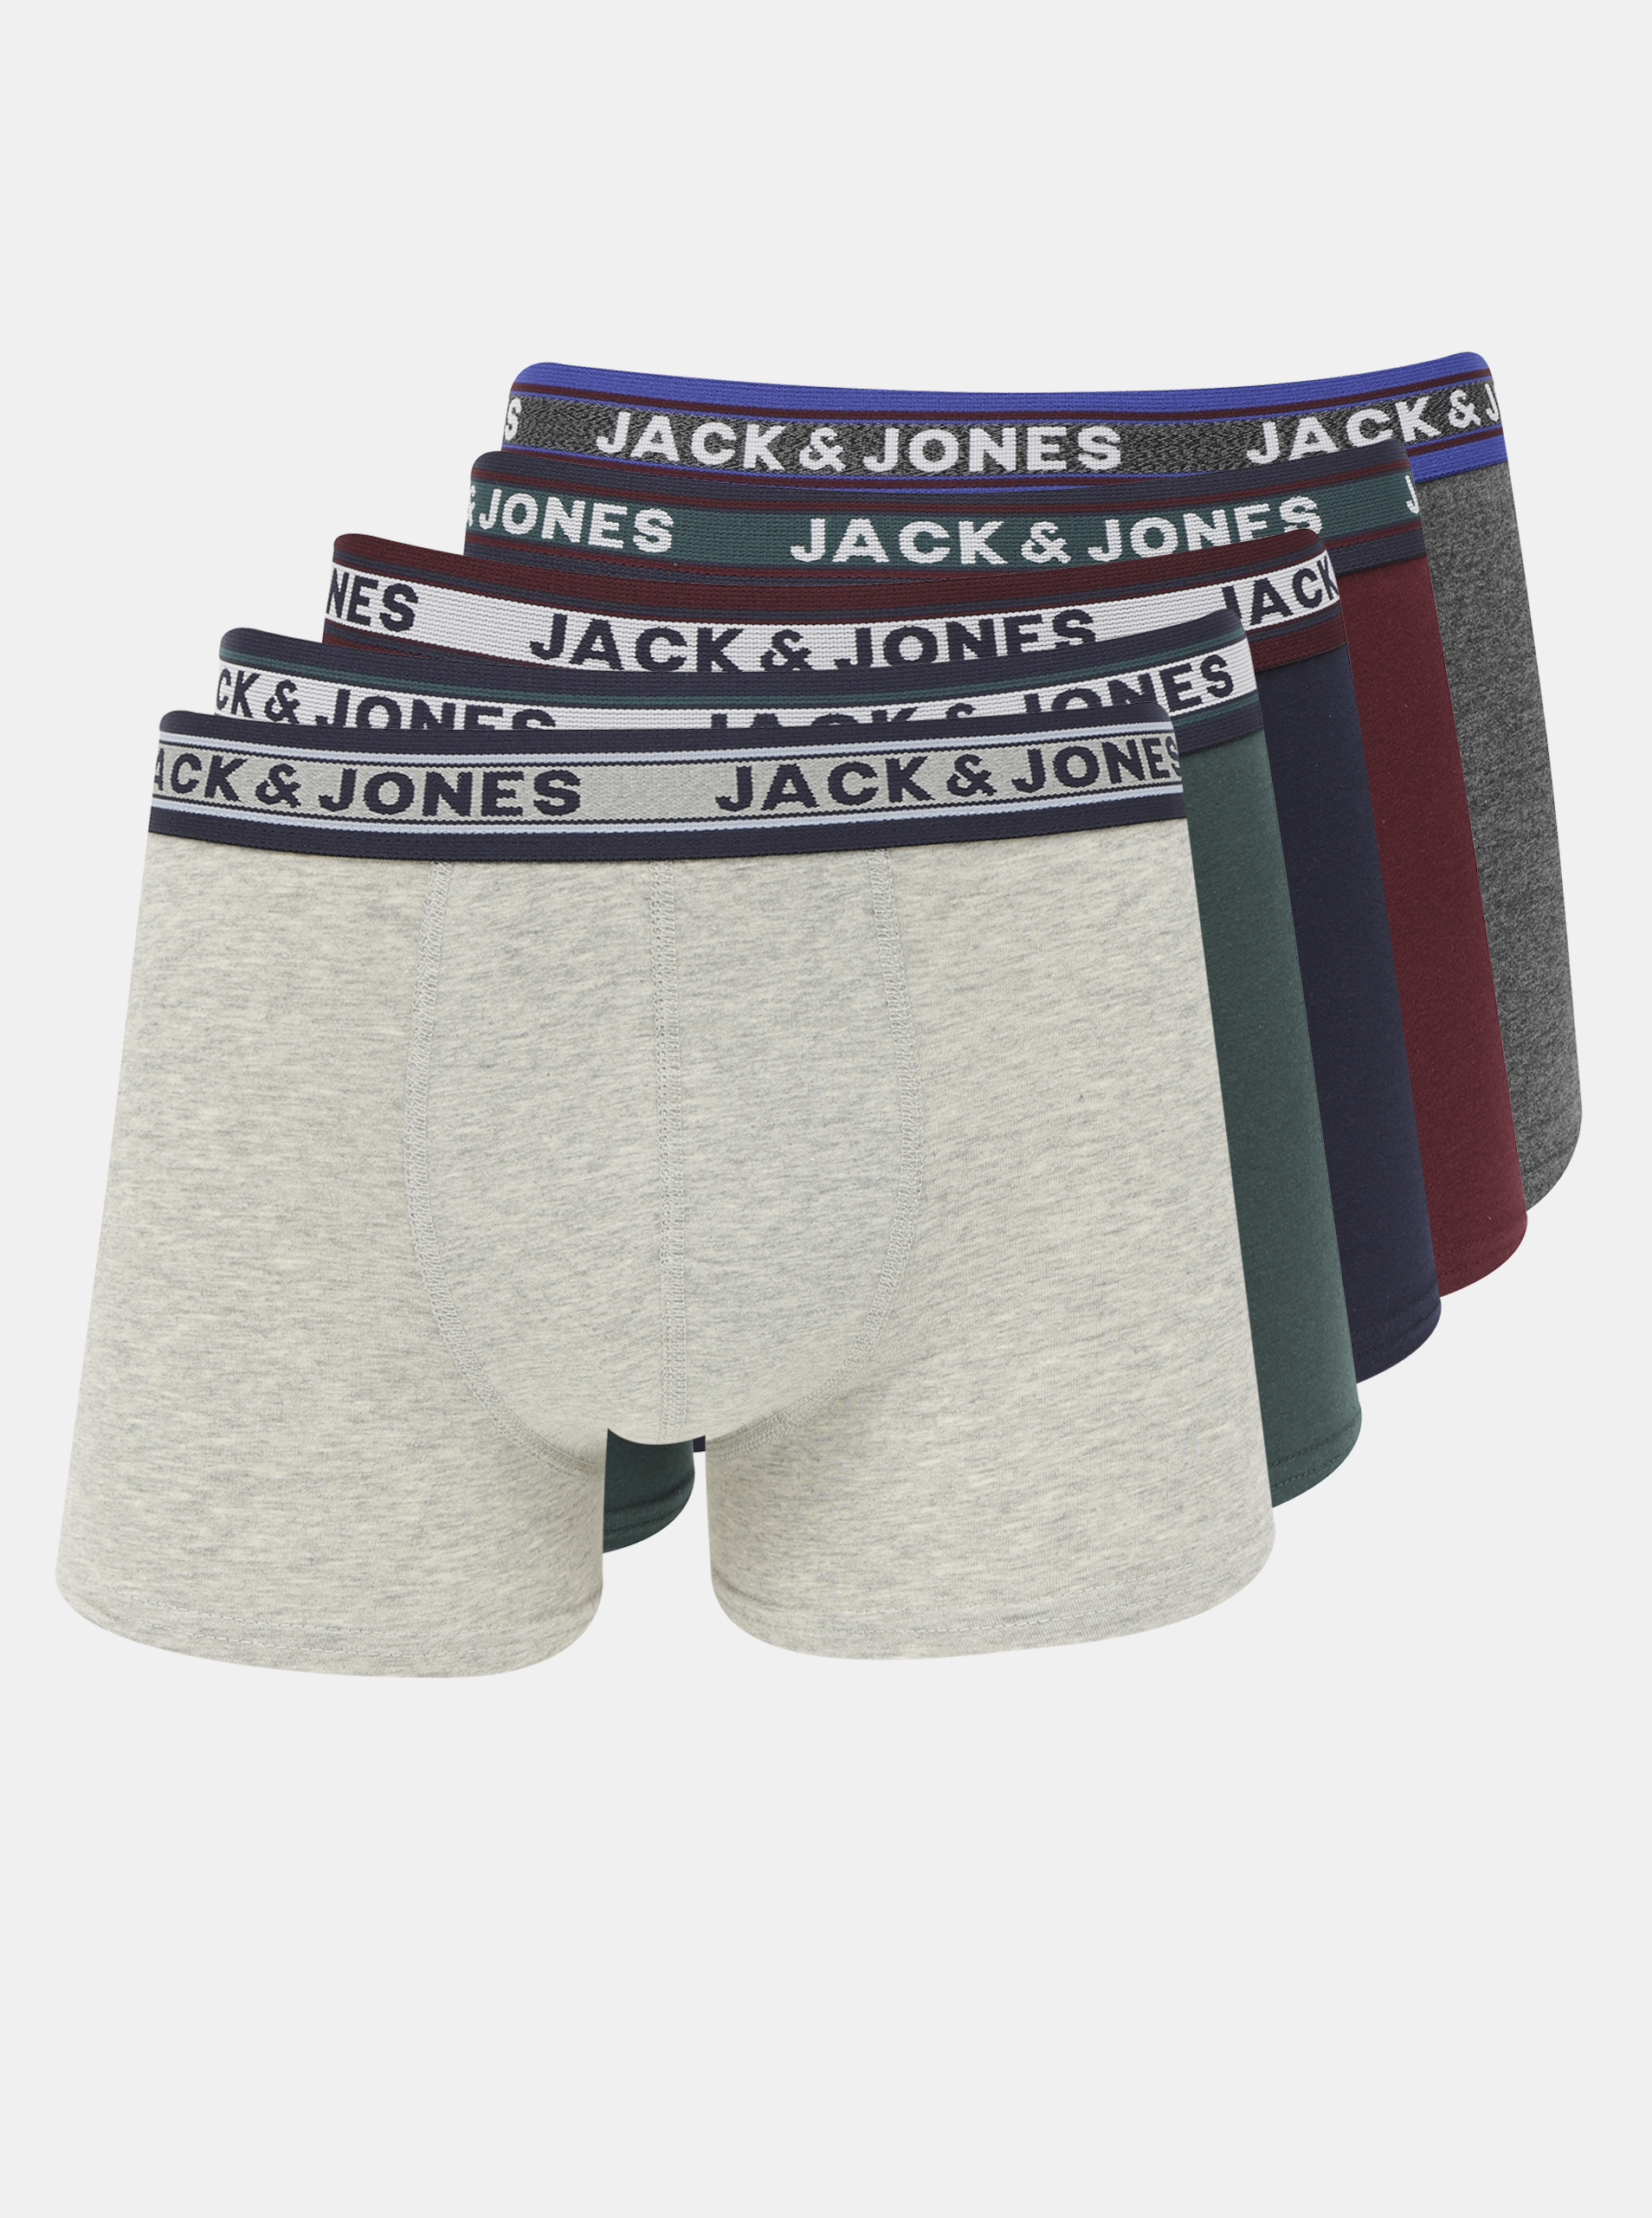 Herren Boxershorts Jack & Jones Multipack im Sale-Jack & Jones 1